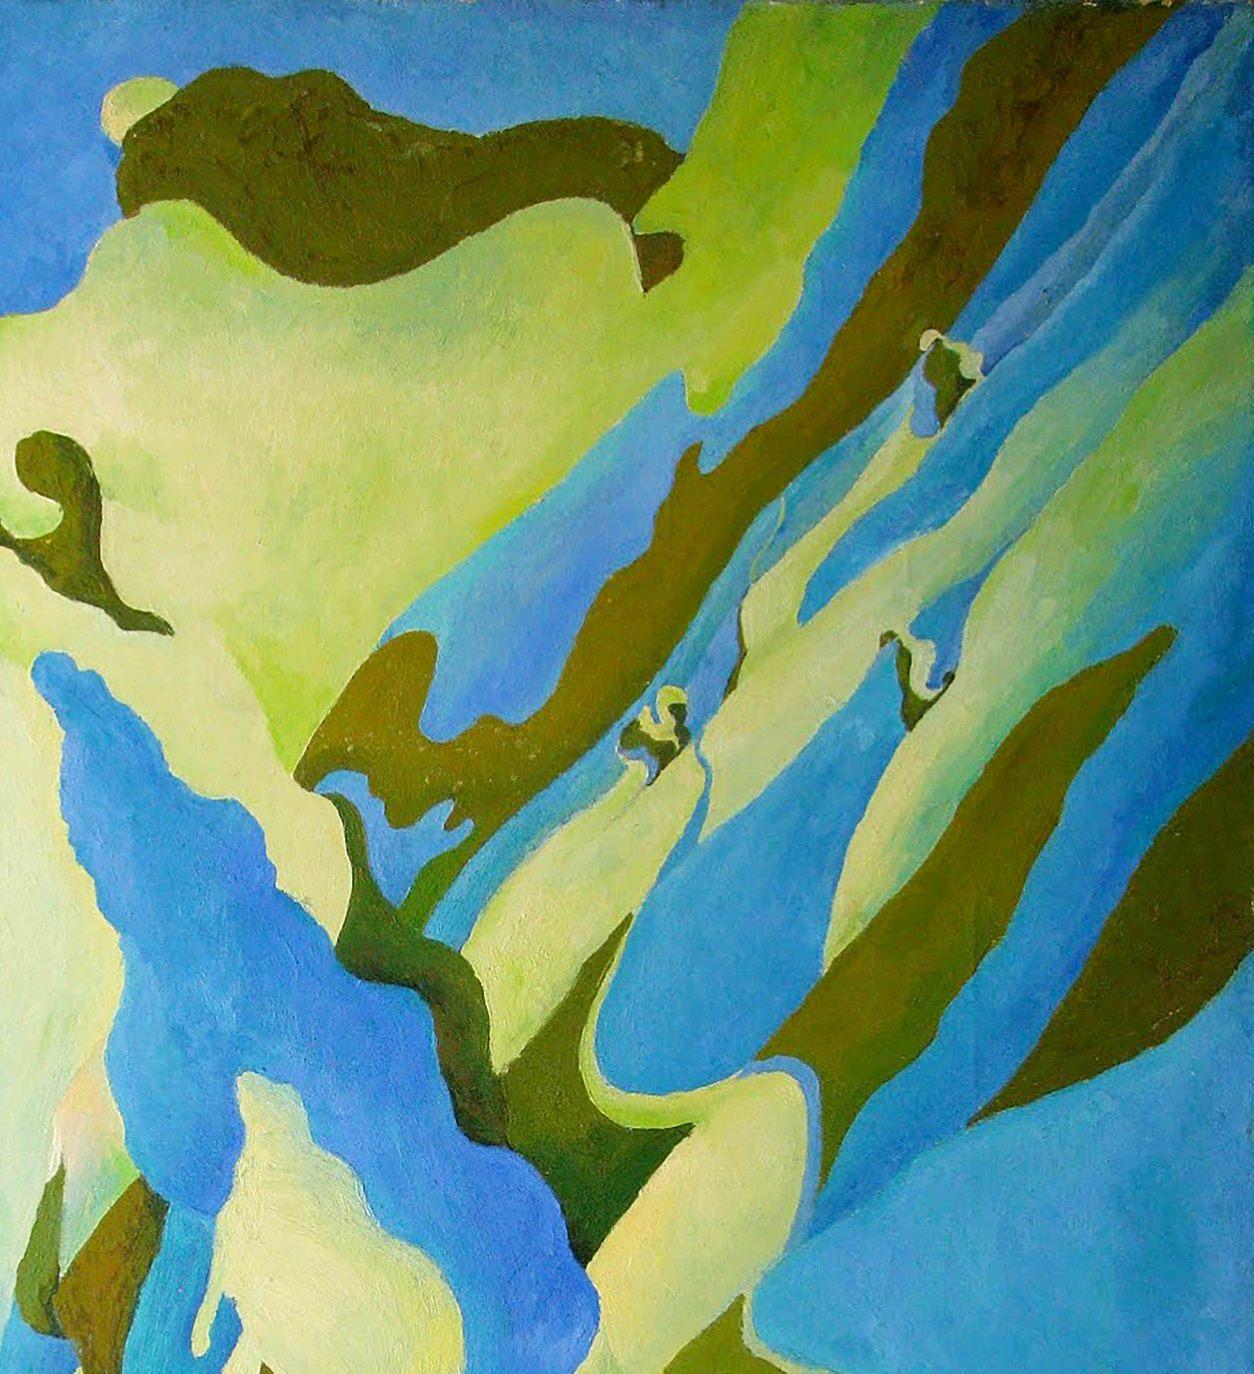 Künstler: Warwarow Anatoli Viktorowitsch
Titel: Pappel,
Größe: 48,5x39,5 Zoll, (123x100 cm)
Medium: Öl auf Leinwand
Handbemalt, original, einzigartig.

Dieses Ölgemälde mit dem Titel 